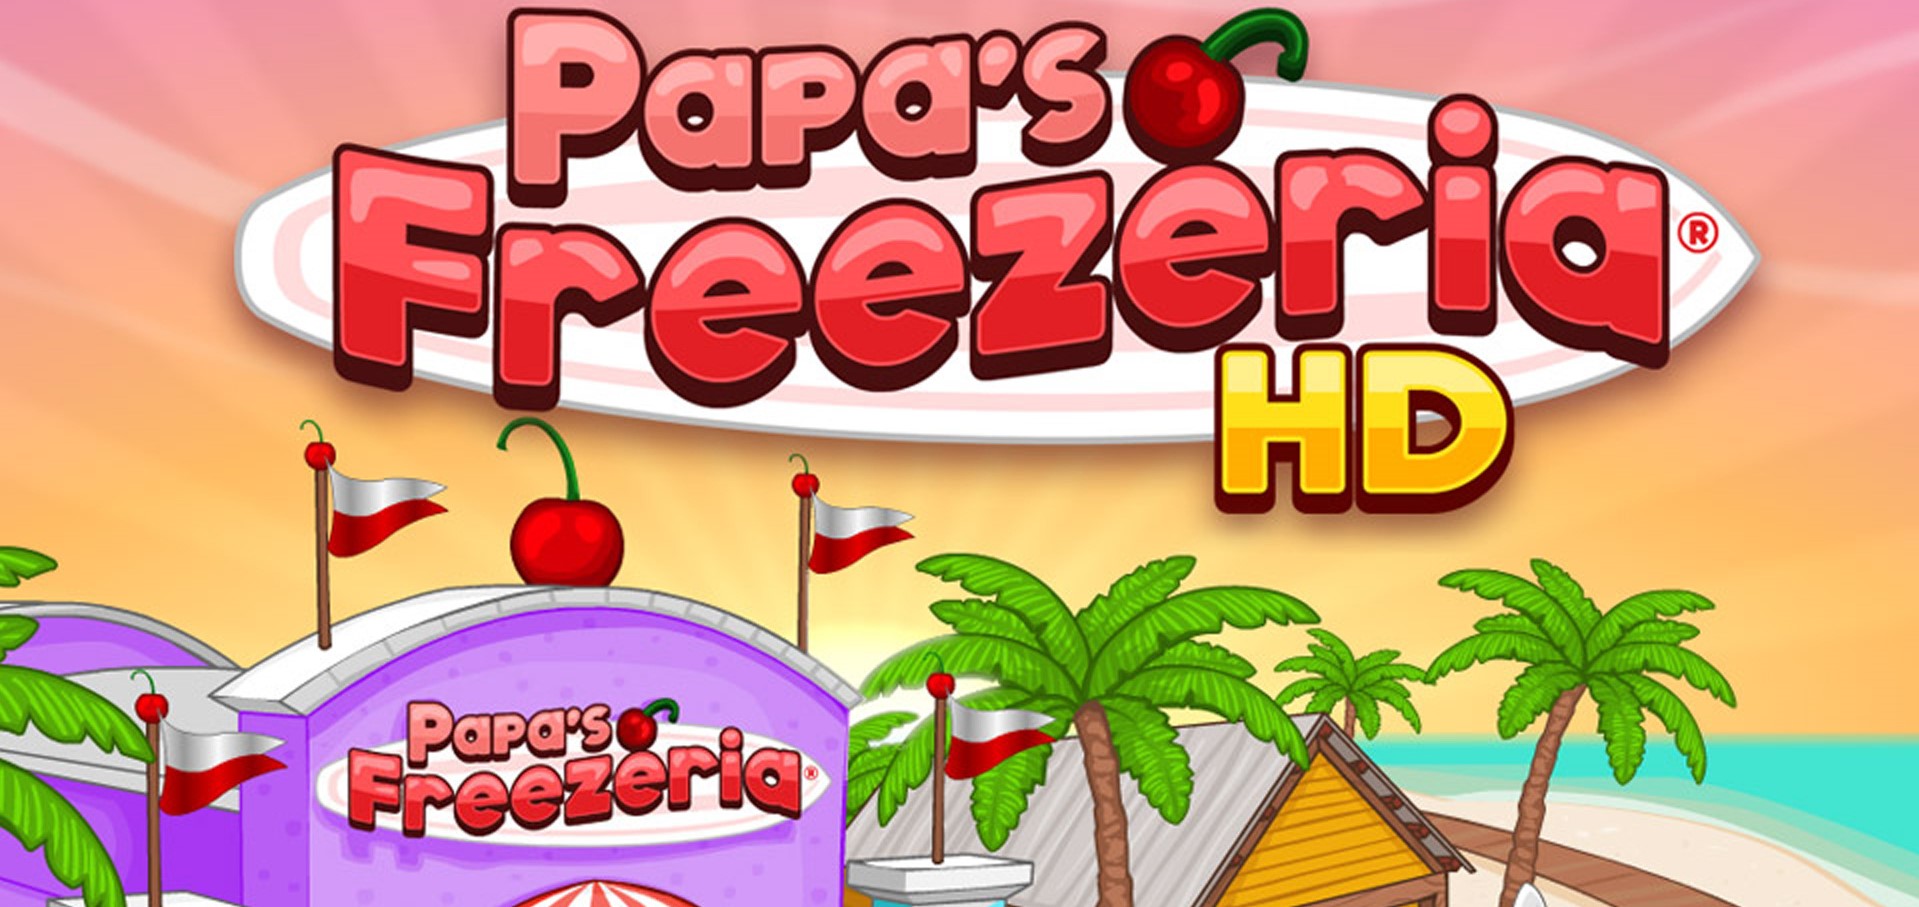 Papa's Pizzeria HD is HERE!!! - Flipline Studios